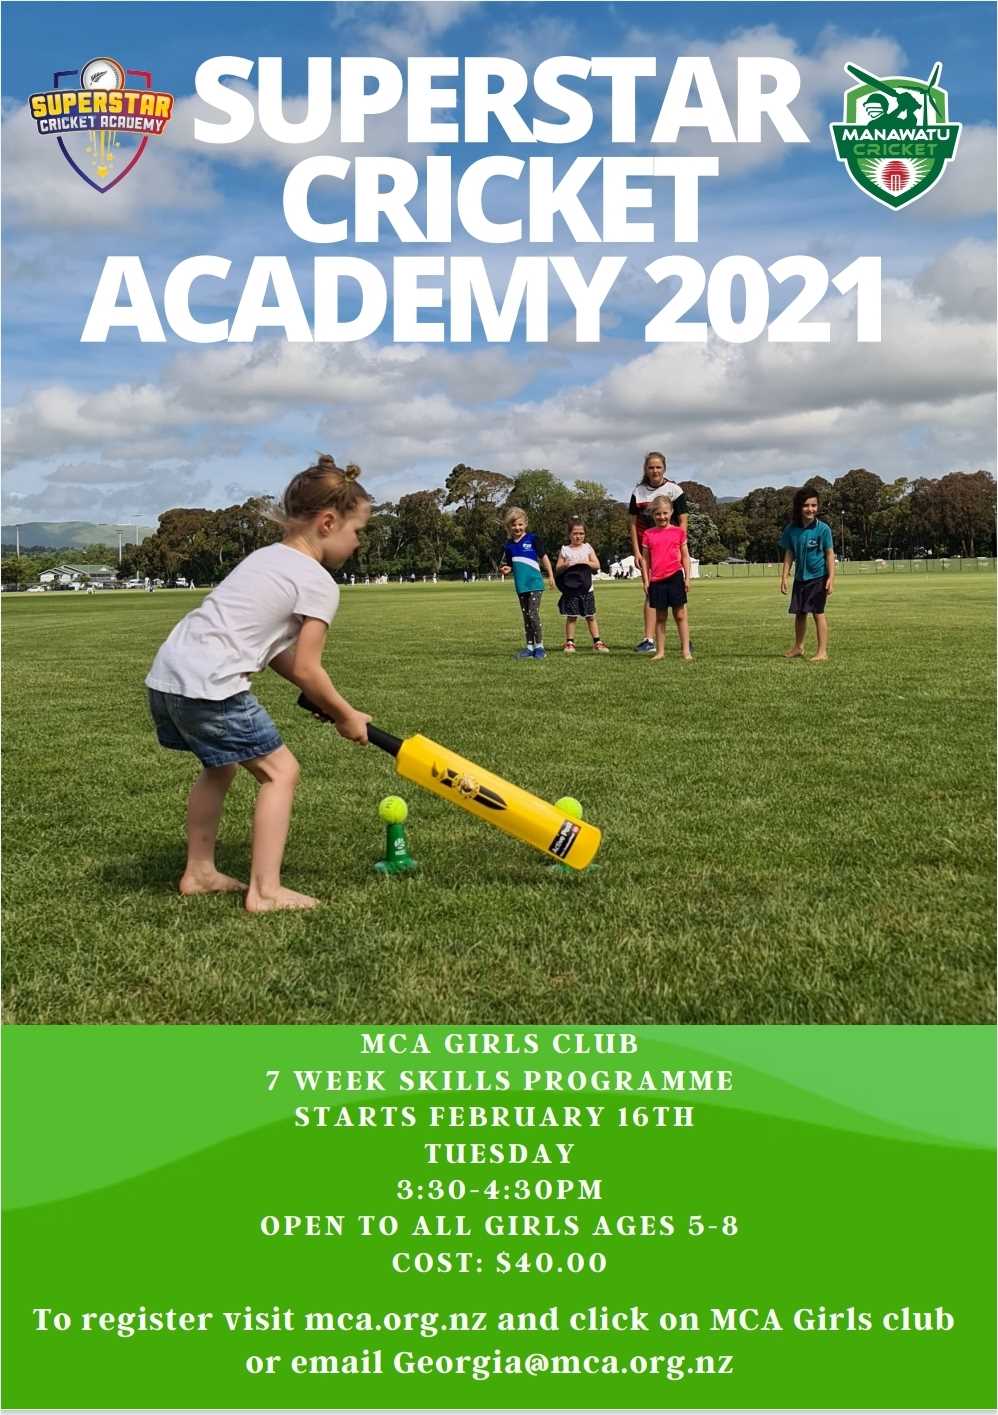 Superstar Cricket Academy 2021 MCA Girls Club